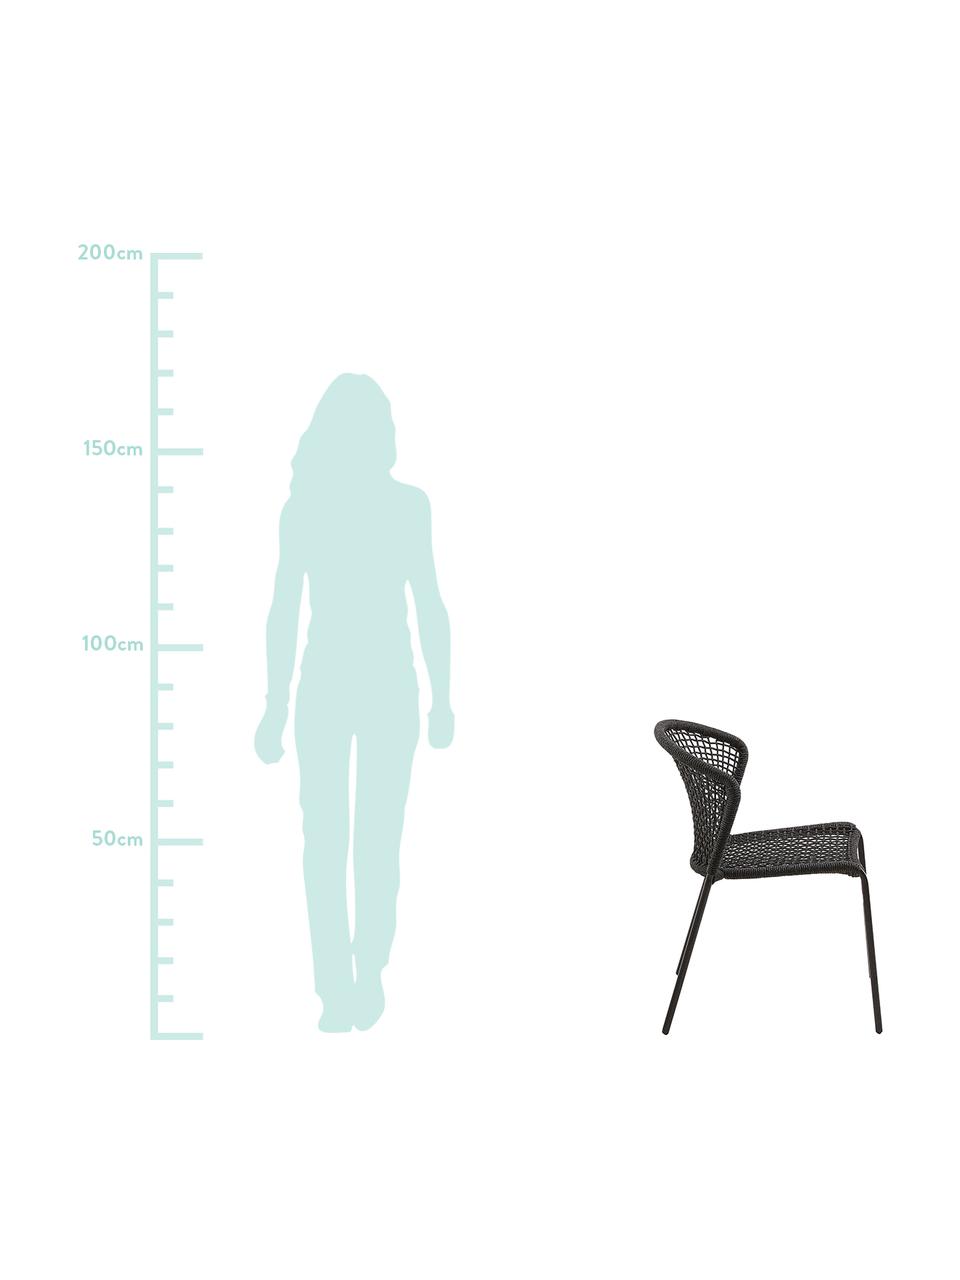 Krzesło ogrodowe Mathias, 2 szt., Nogi: metal malowany proszkowo, Ciemny  szary, S 55 x G 62 cm